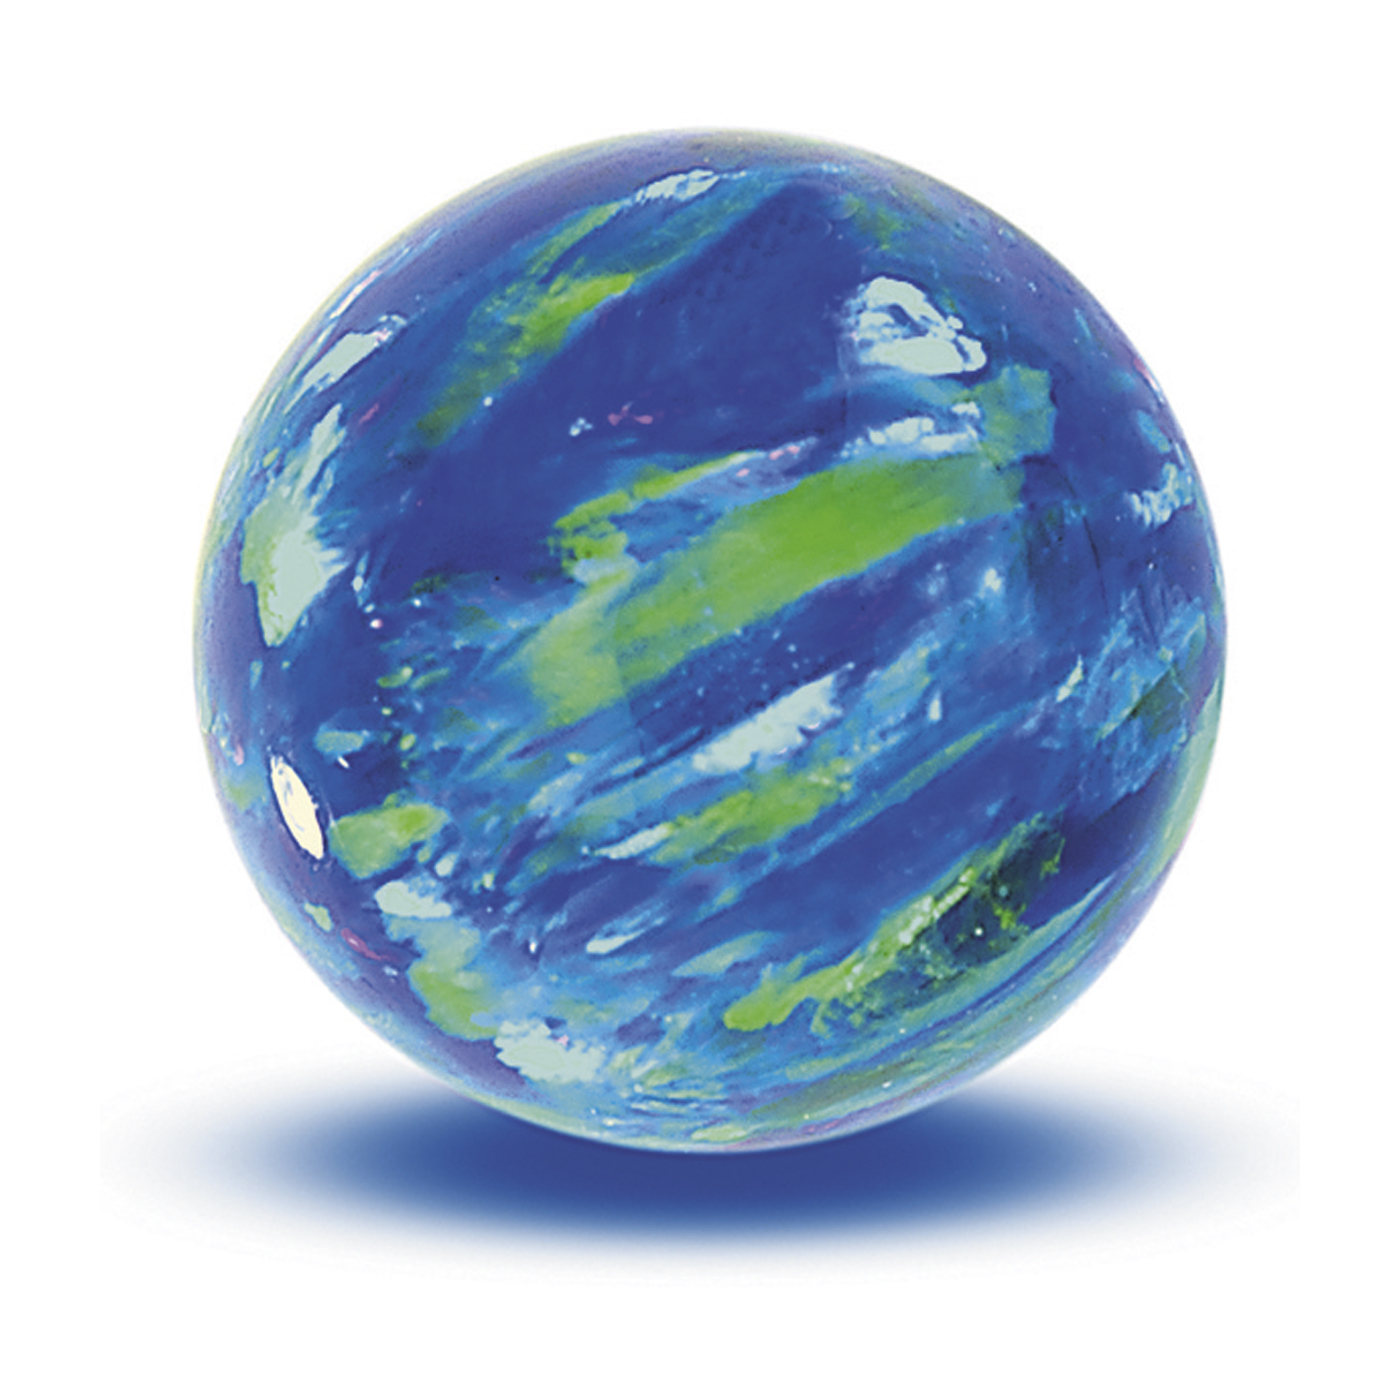 Opal Imitation Ball, Cyan, ø 6 mm, Drilled Through - 1 piece